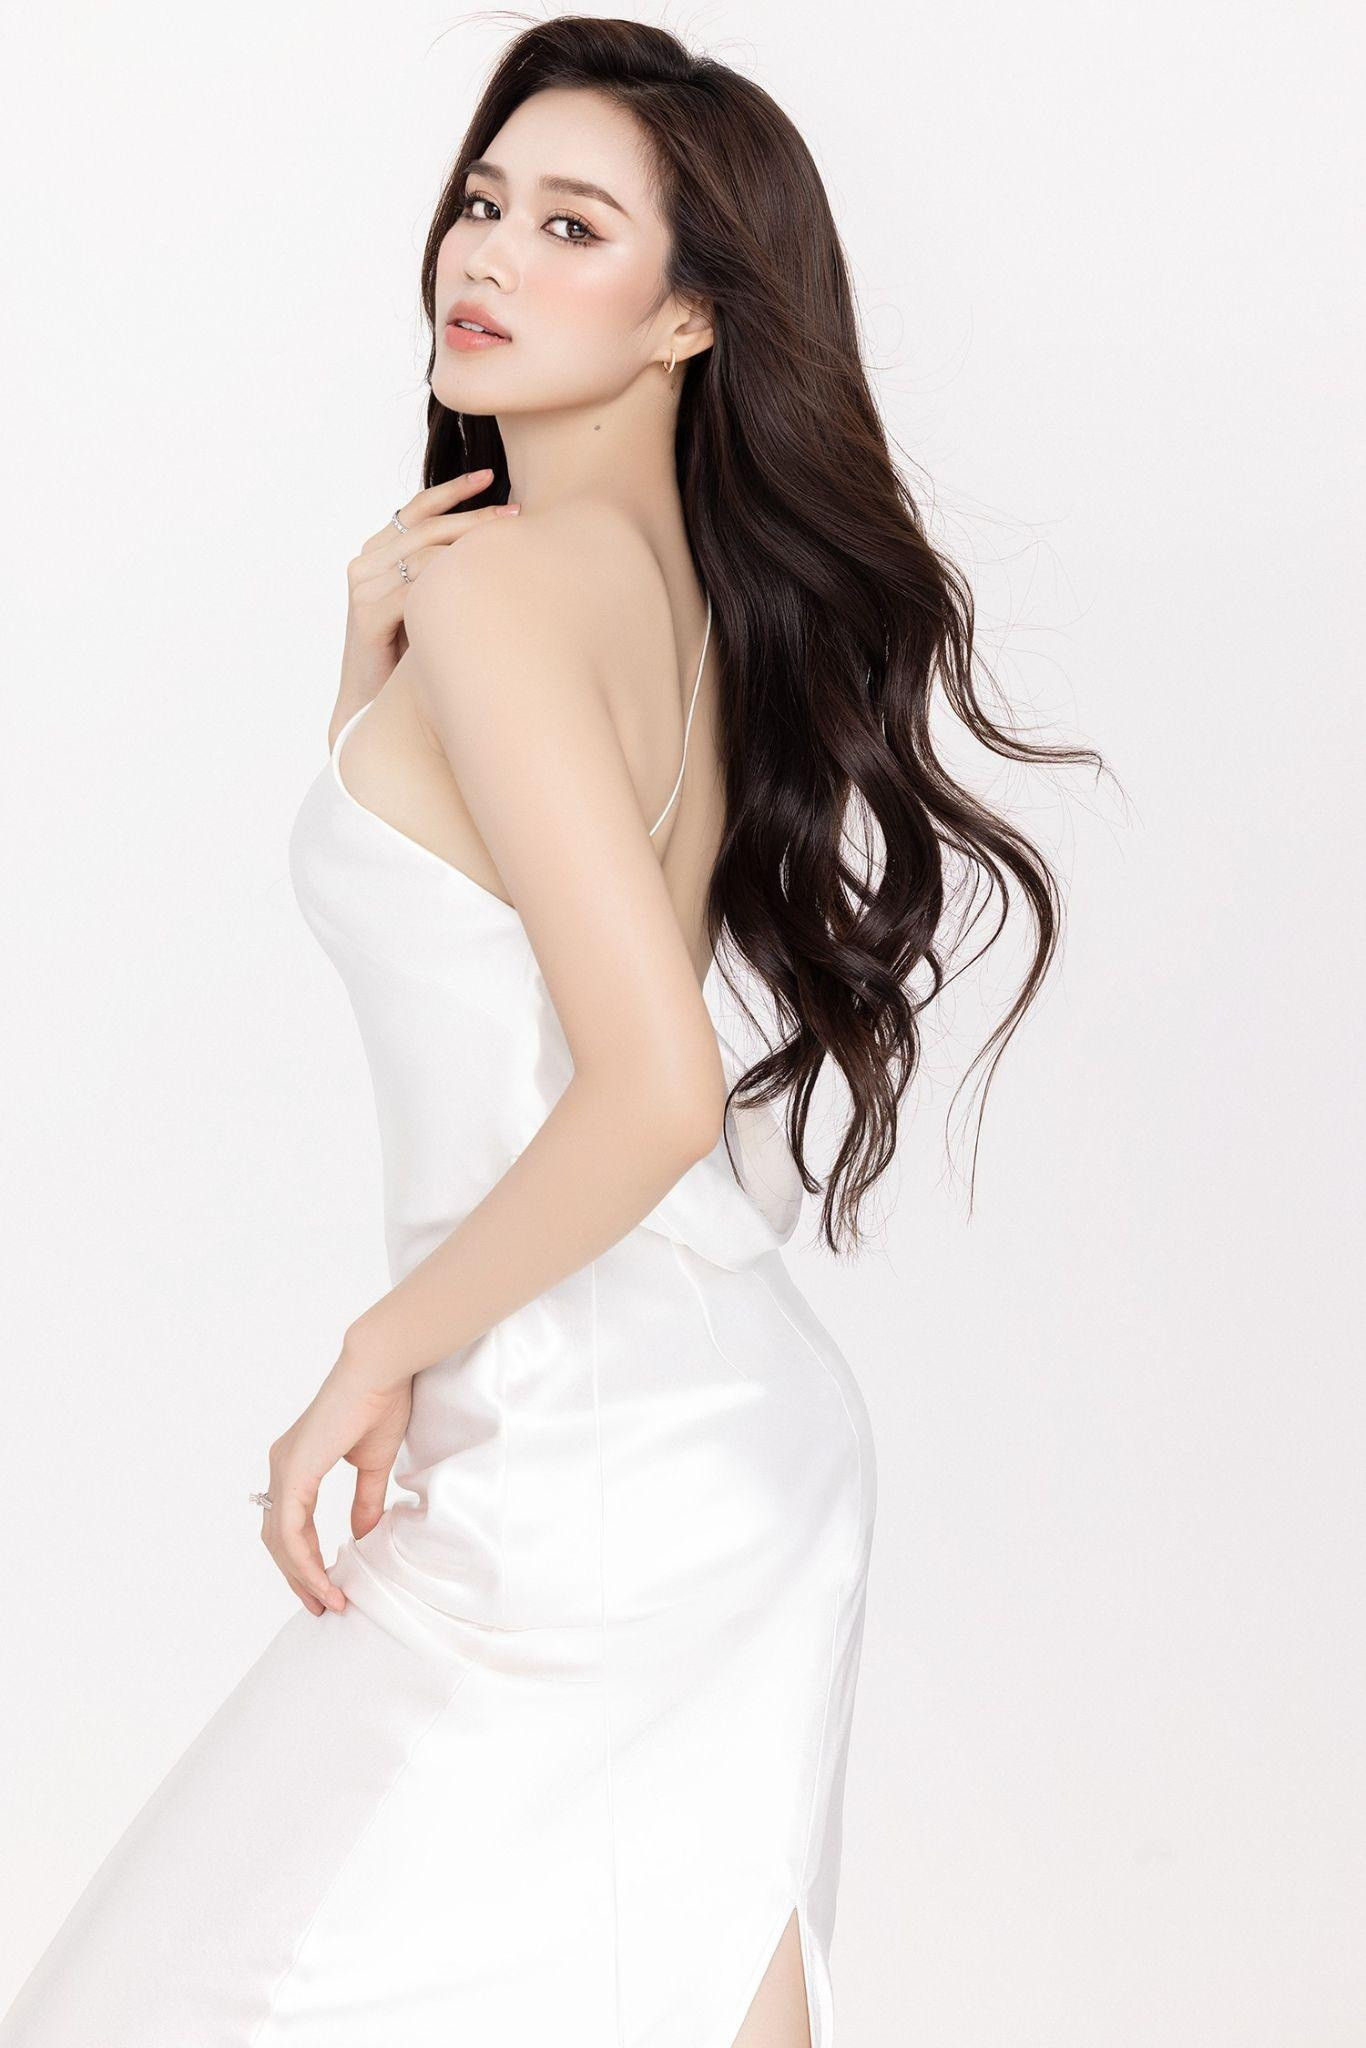 Hoa hậu Đỗ Thị Hà: Nếu ai đó yêu tôi thật lòng, họ sẽ không bị áp lực - 5